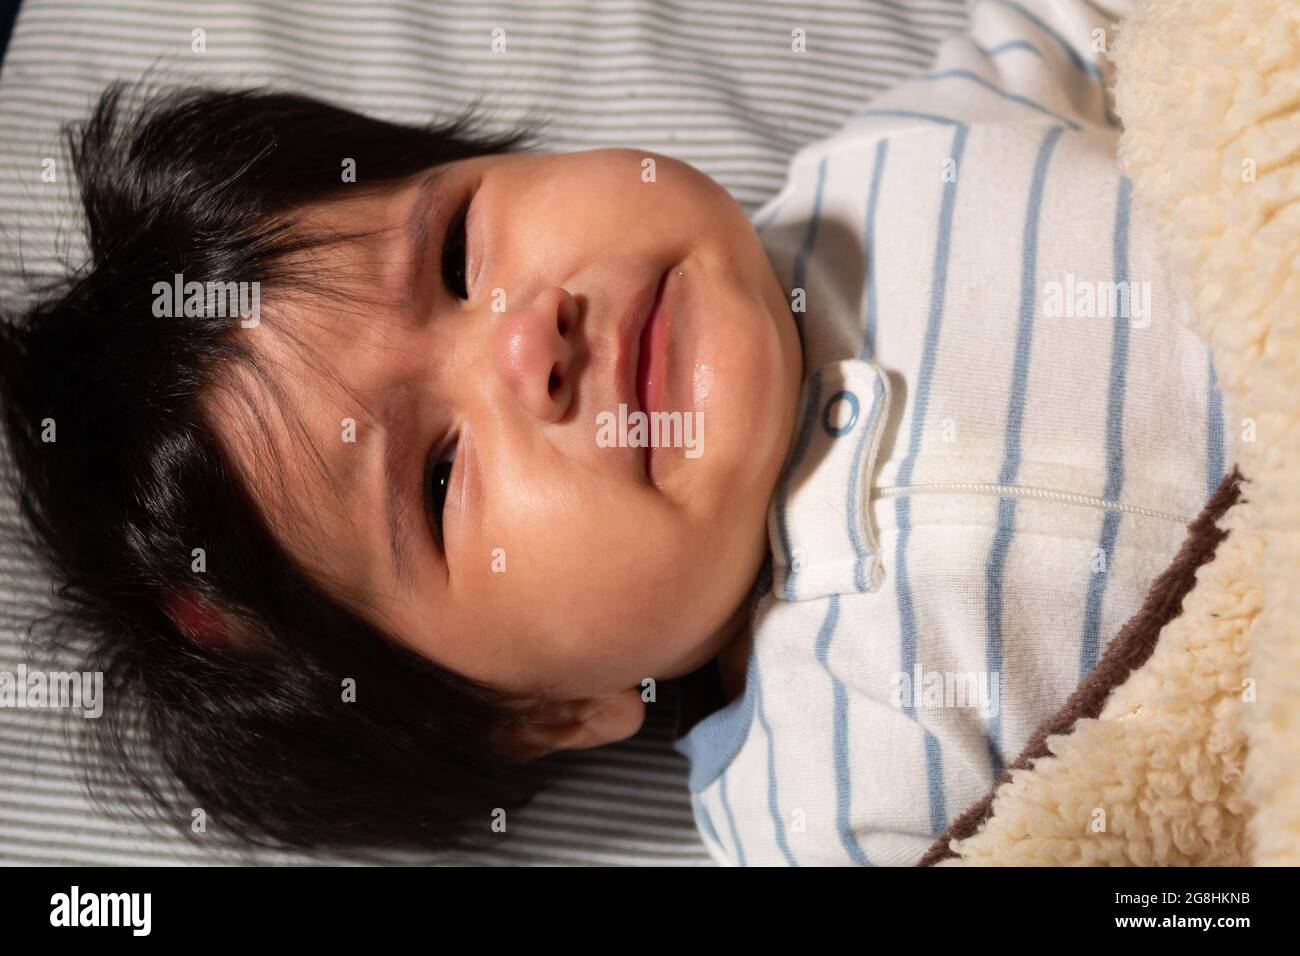 Porträt eines 5 Monate alten hispanischen Babys mit langen Haaren, die wütend und traurig aussehen Stockfoto